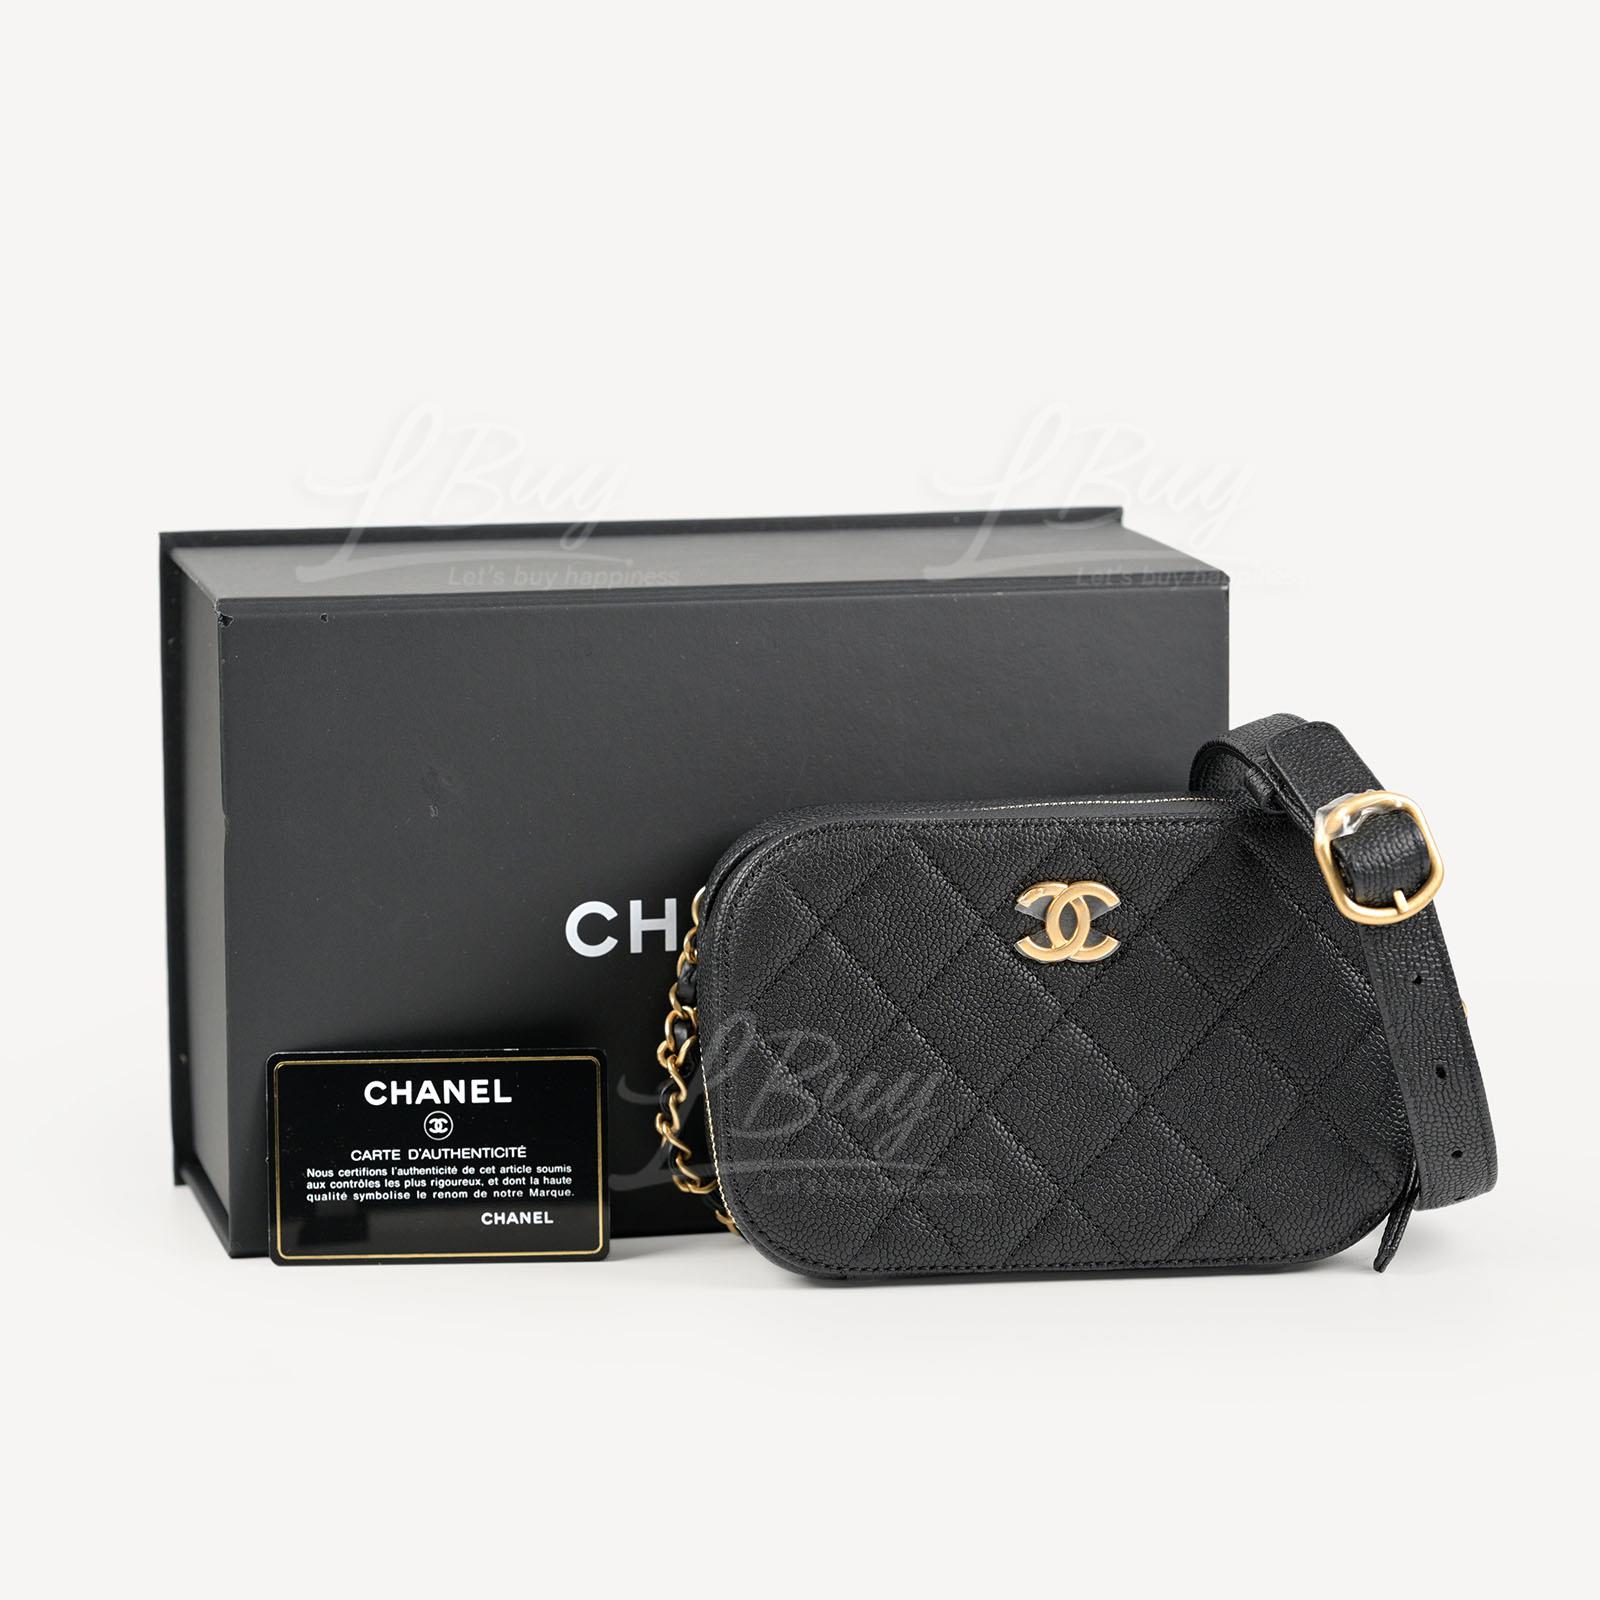 CHANEL Nylon Waist Bag Black/White – Brand Off Hong Kong Online Store